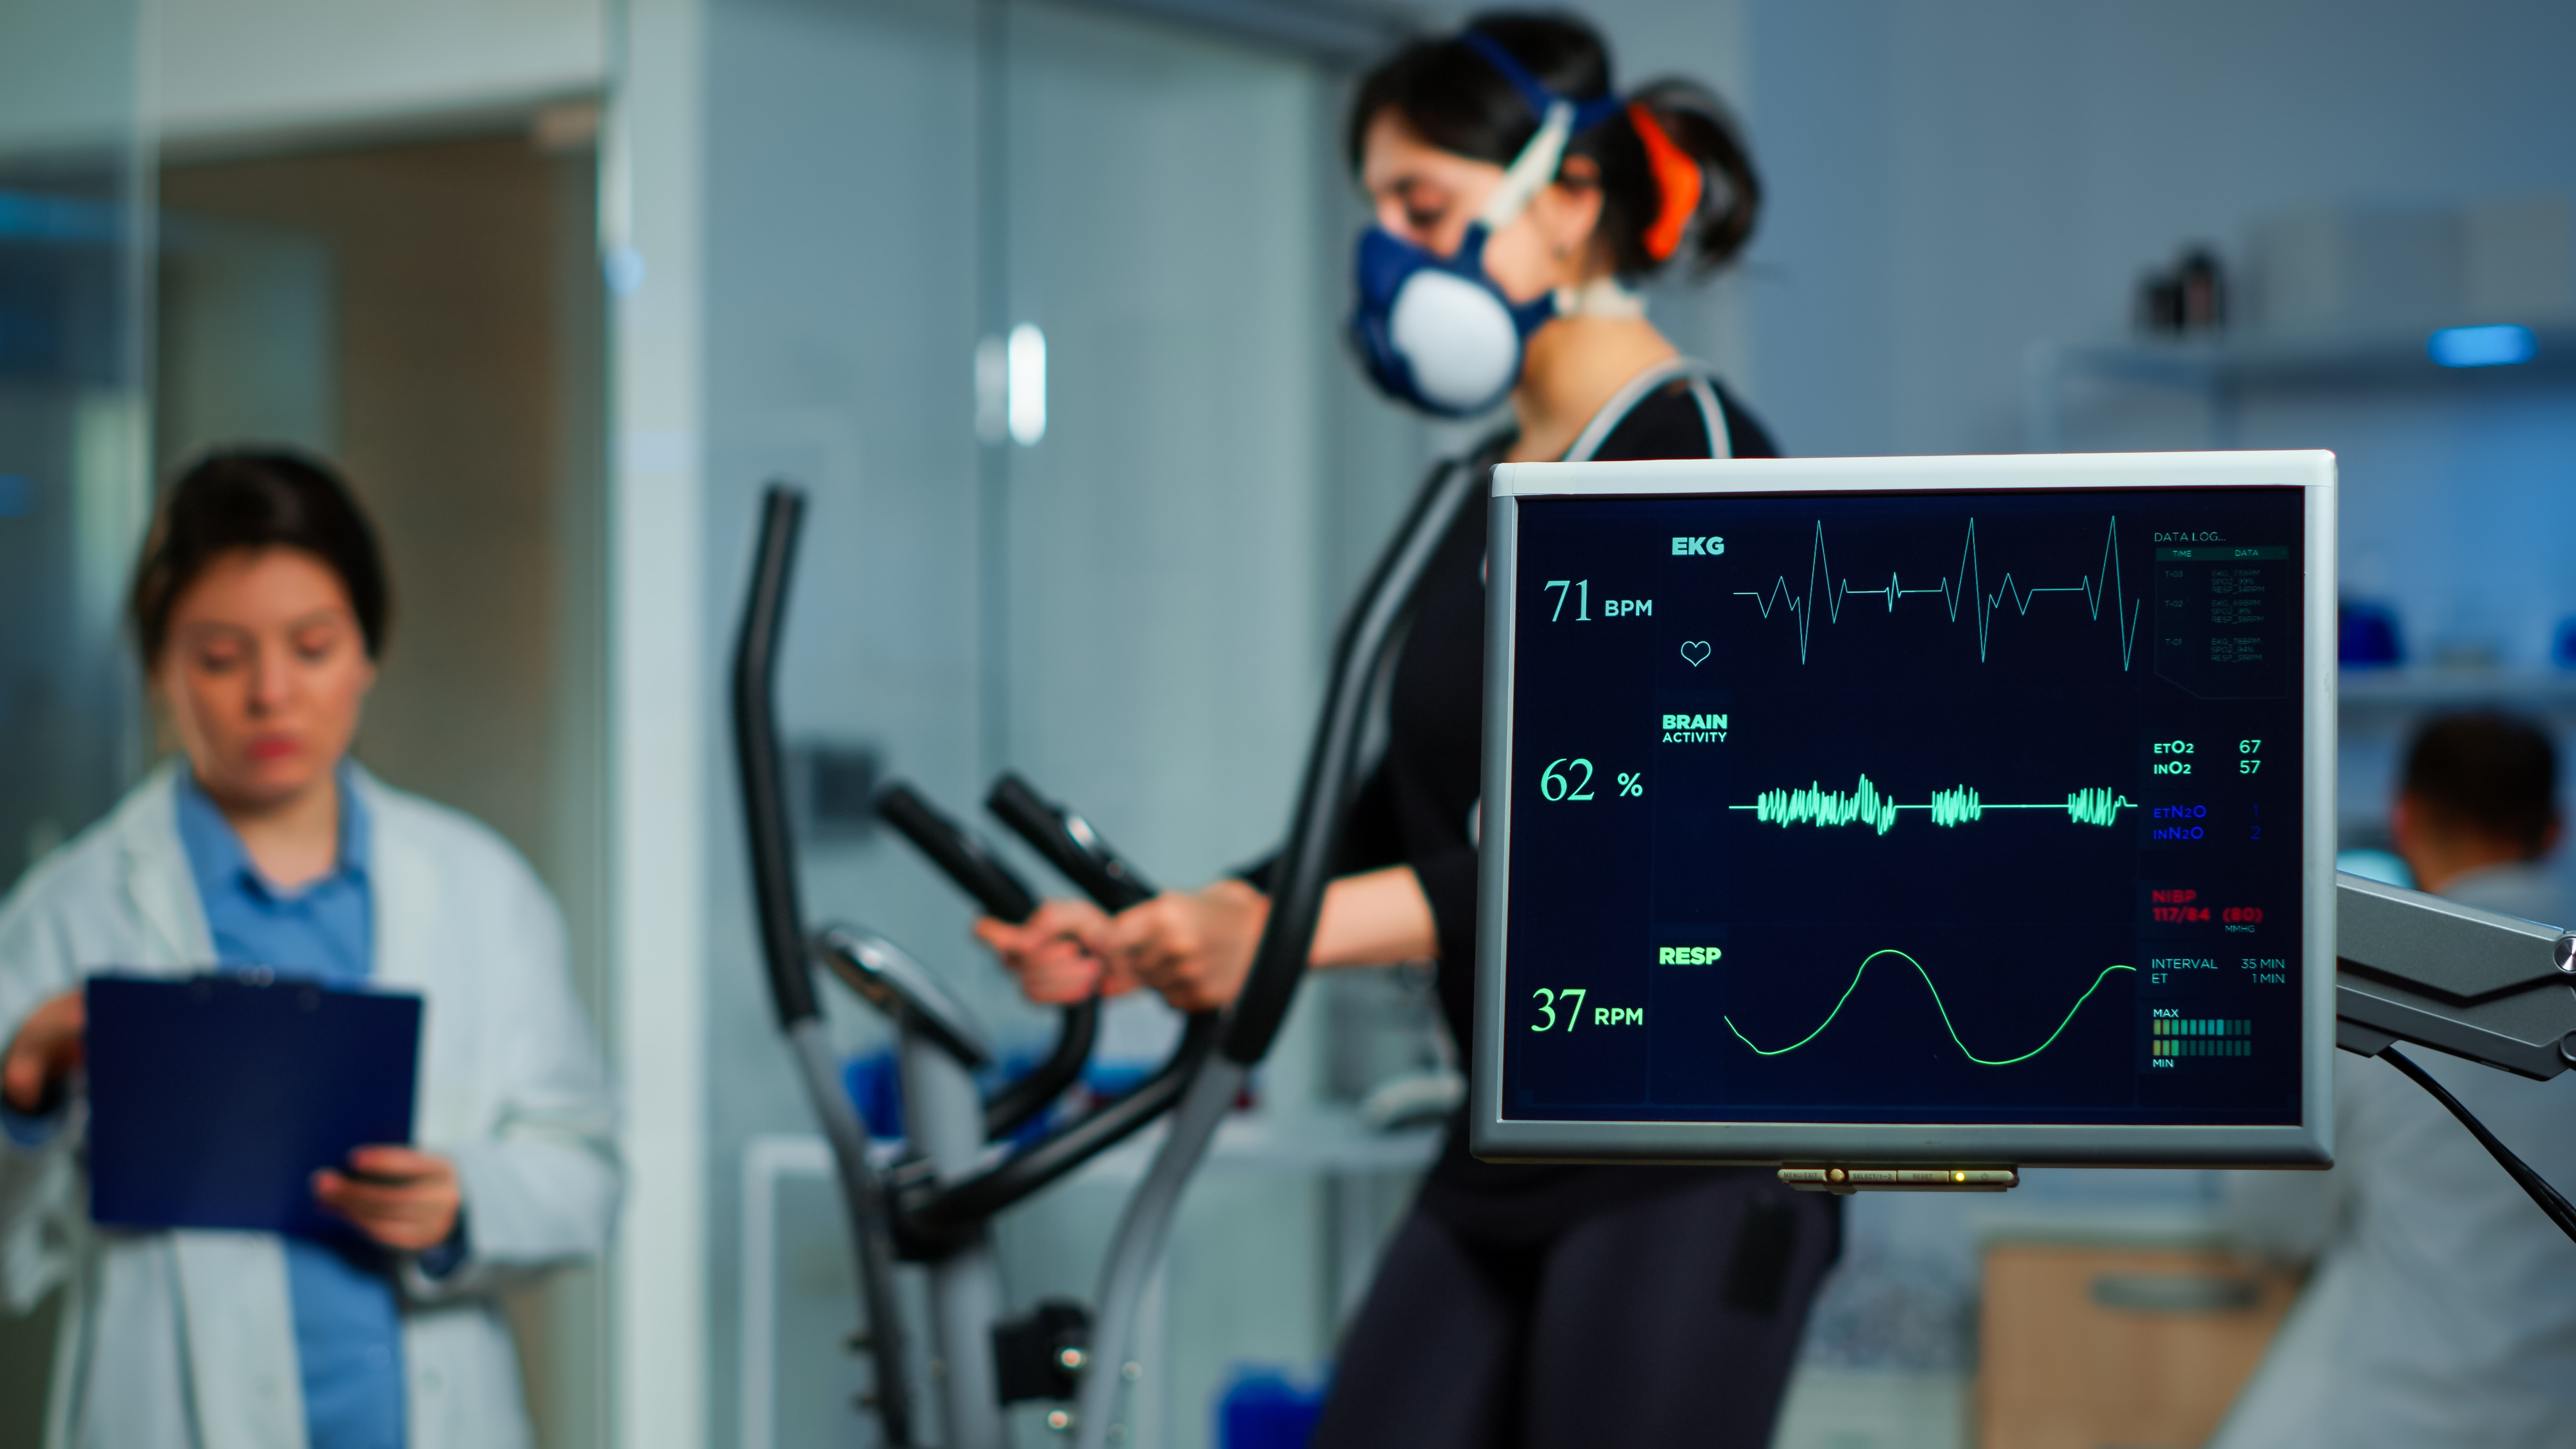 Un athlète en train de mesurer sa fréquence cardiaque dans un laboratoire